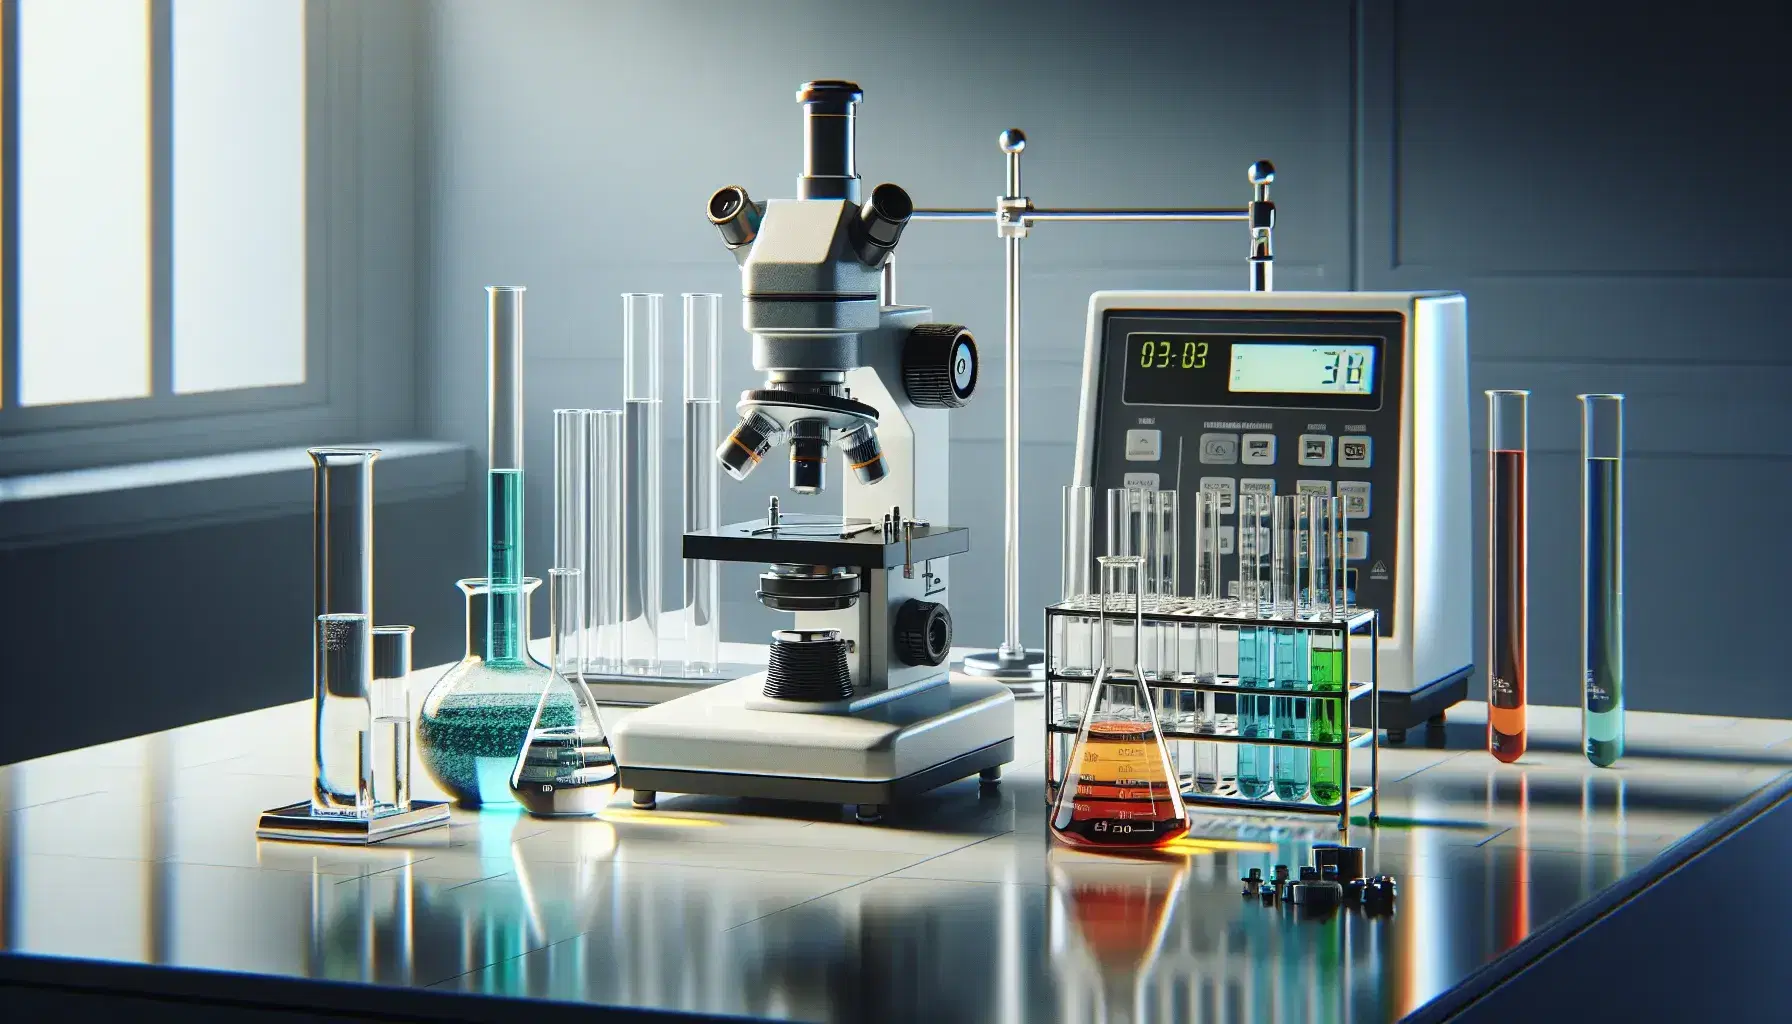 Laboratorio científico con microscopio, tubos de ensayo con líquidos de colores, balanza analítica y material de vidrio sobre mesa blanca.